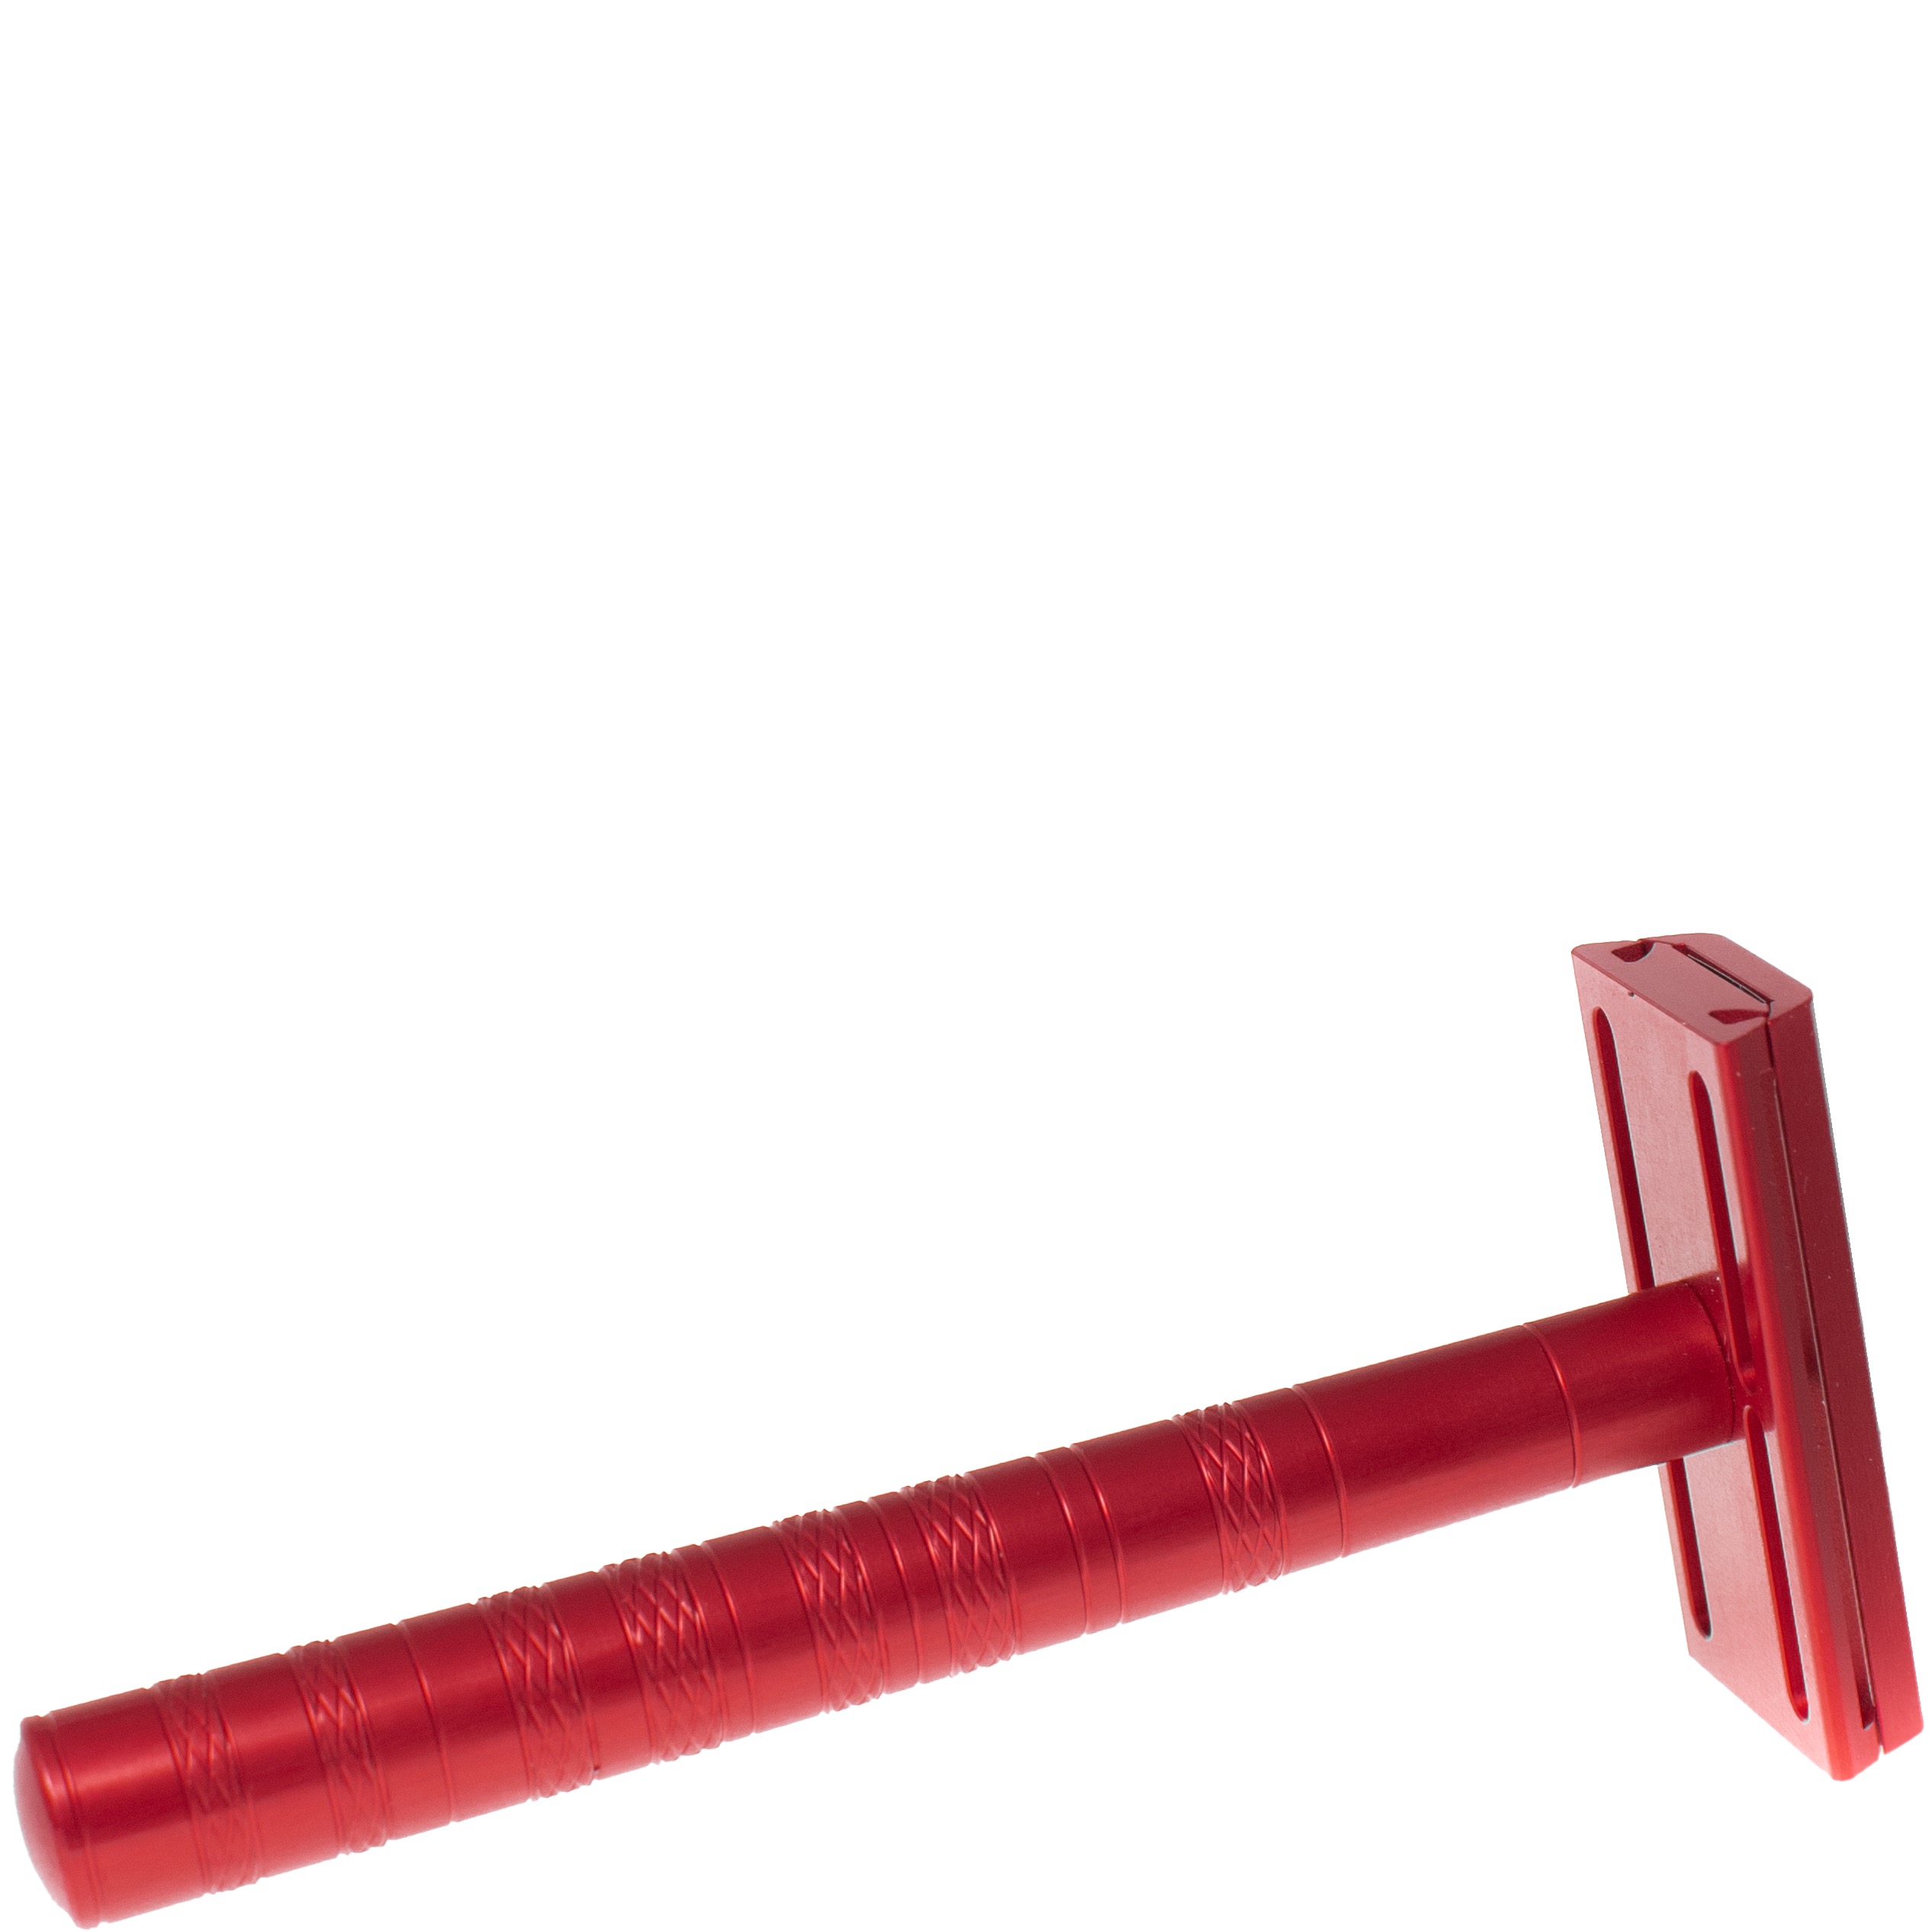 Henson Shaving Safety Razor AL13 Medium Rocket Red - 1.4 - HS-91403